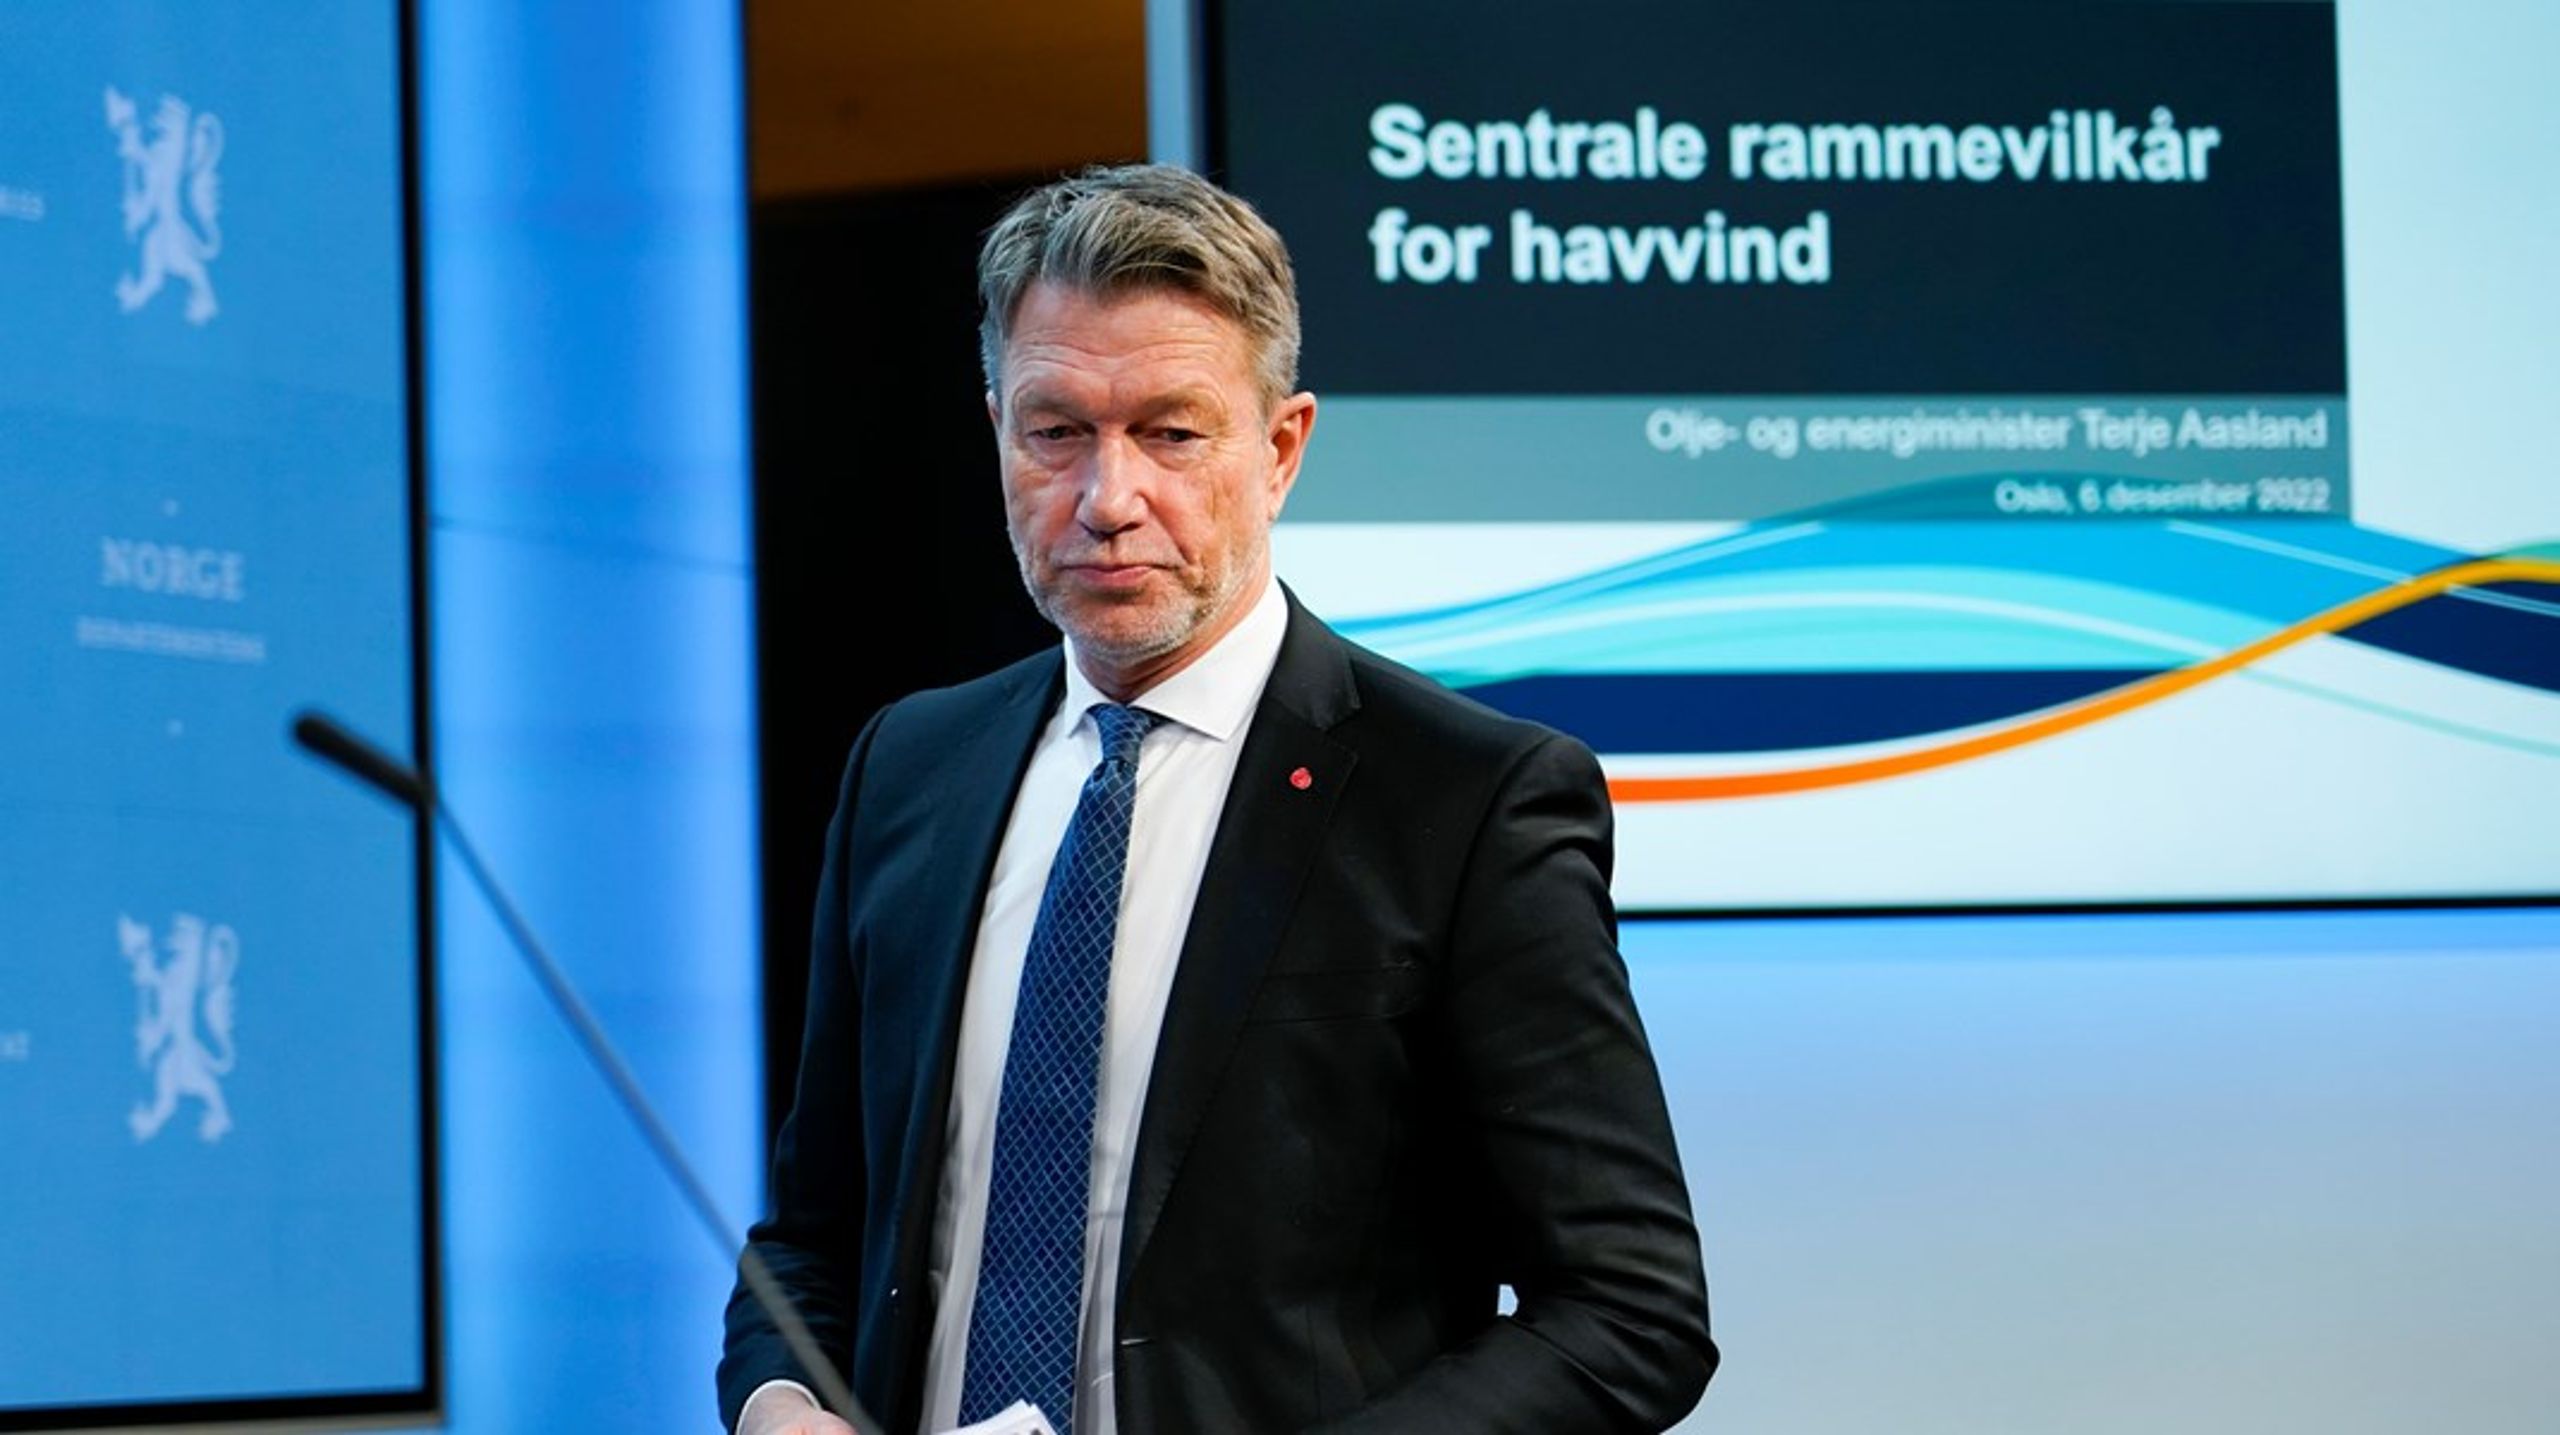 Olje- og energiminister Terje Aasland (Ap) presenterte tirsdag nye&nbsp;rammevilkår for utbygging av havvind på feltene Sørlige Nordsjø II og Utsira Nord.